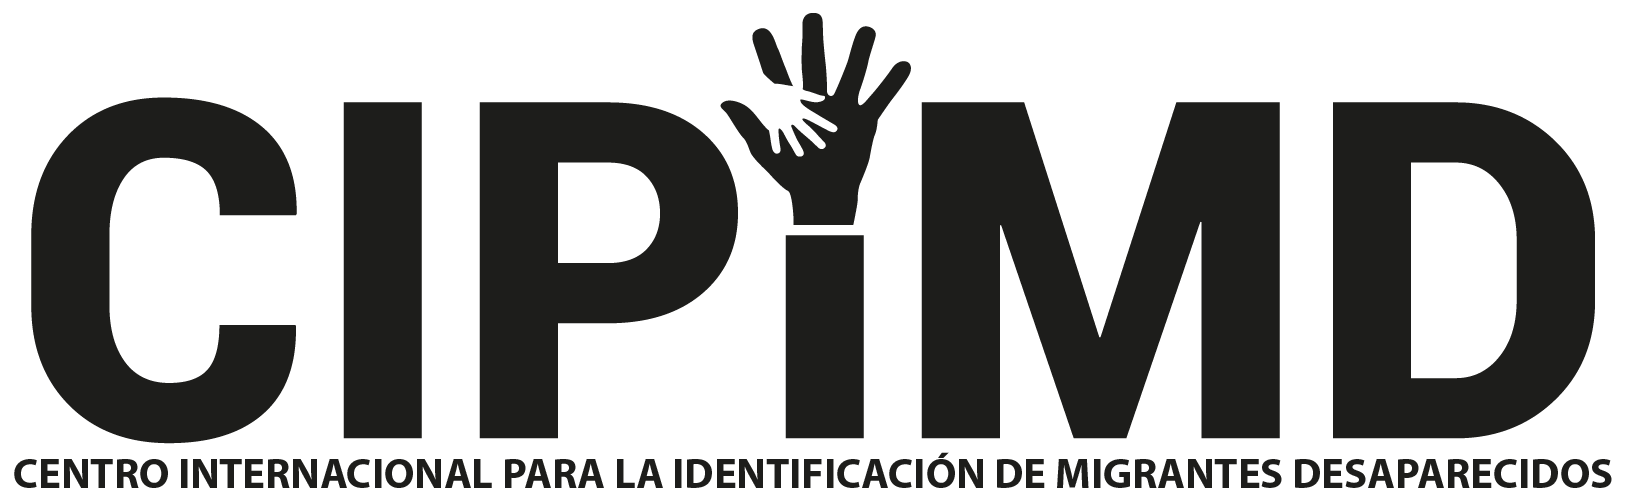 Centro Internacional para la Identificación de Migrantes Desaparecidos (CIPIMD)